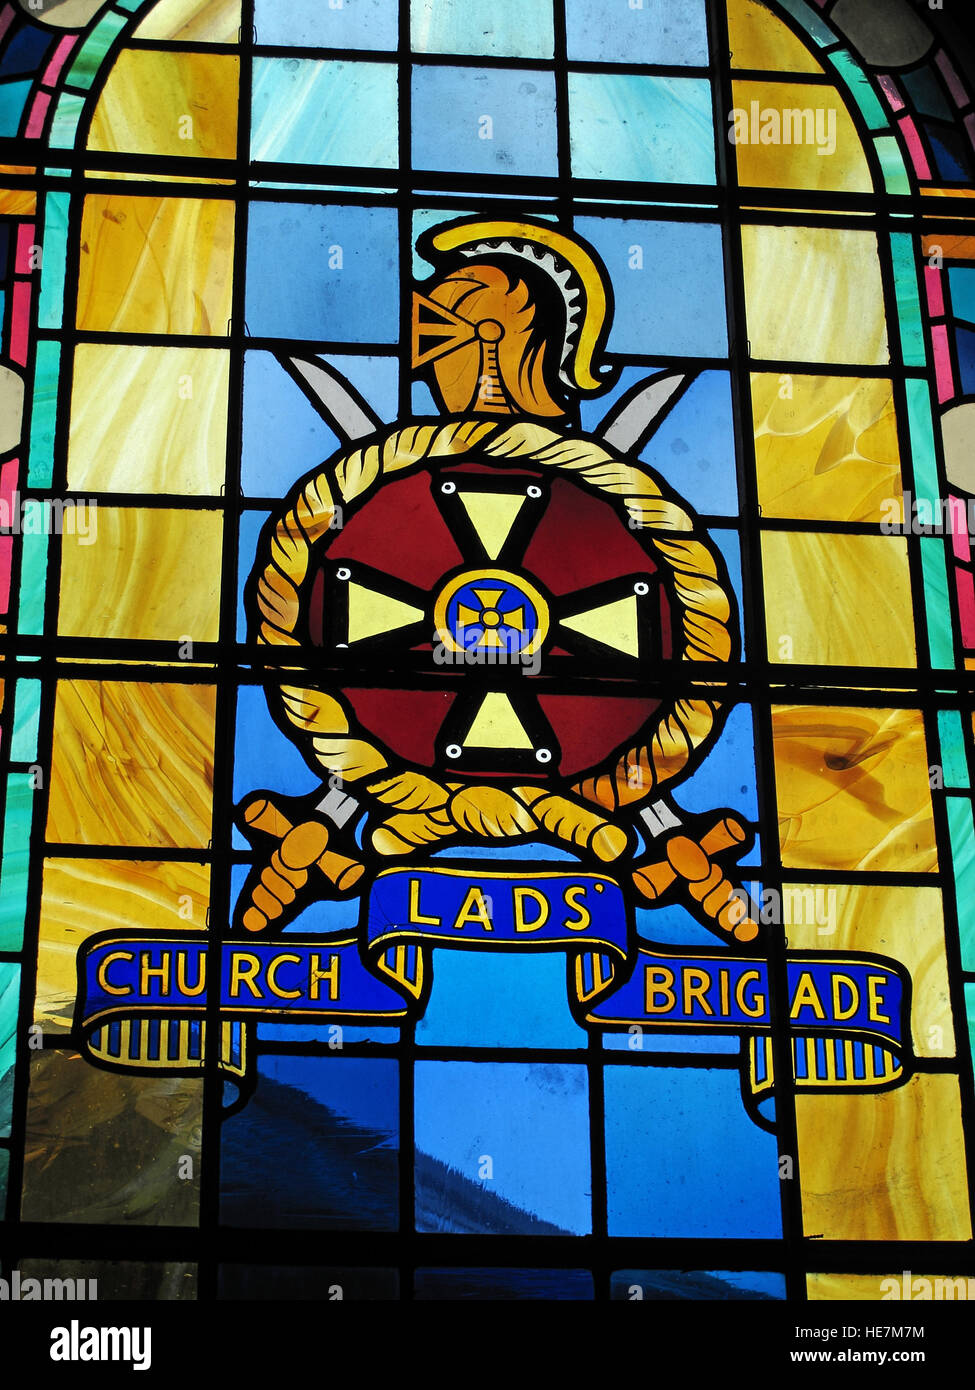 St Annes,intérieur de la cathédrale de Belfast Church Lads Brigade vitraux Banque D'Images